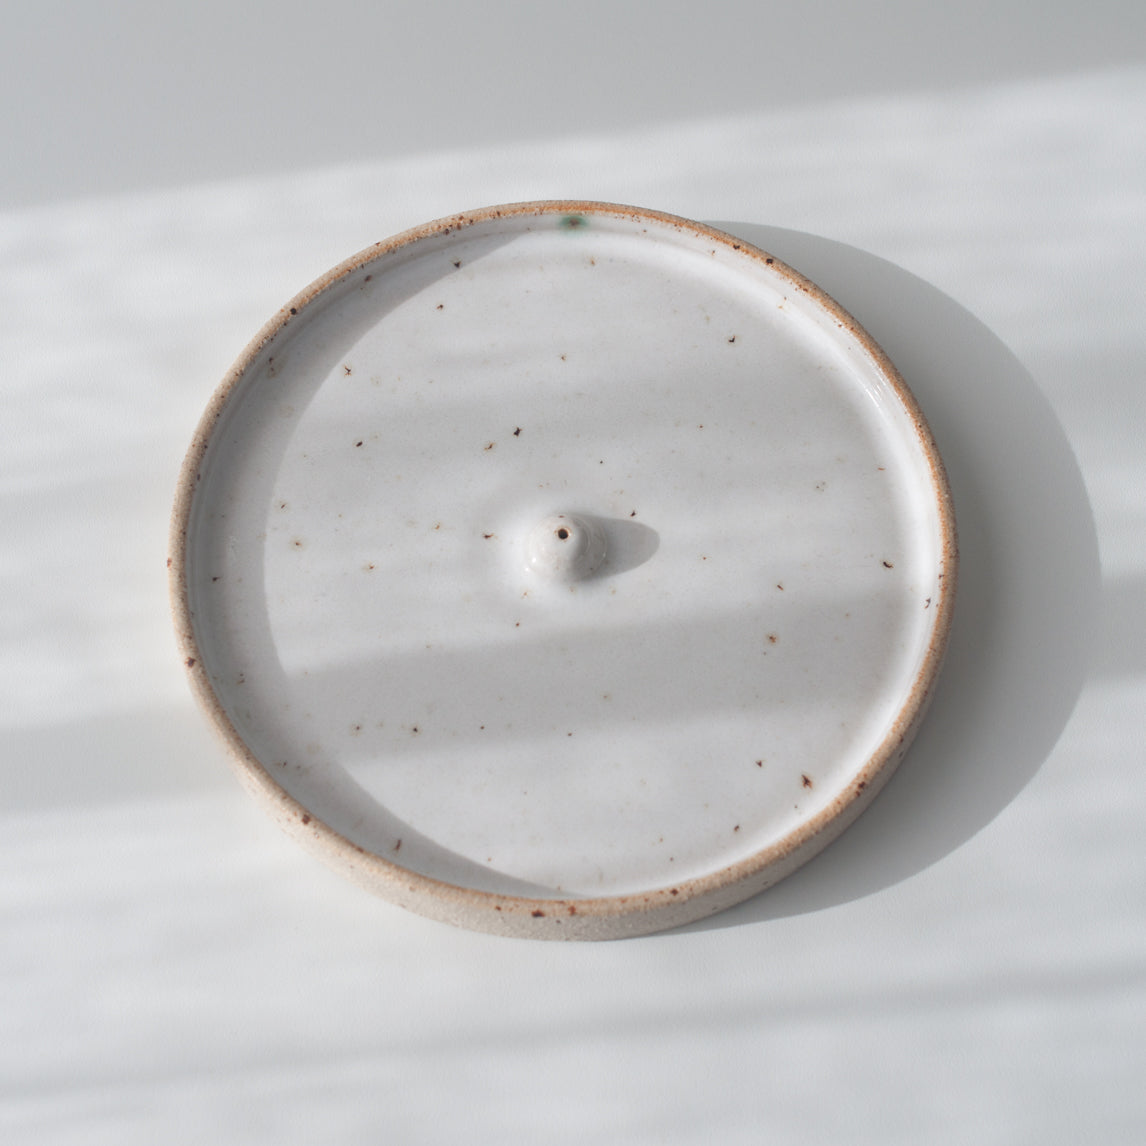 SECONDS Incense Holder - Speckled, Incense Holder - DOR & TAN | Contemporary Handmade Tableware